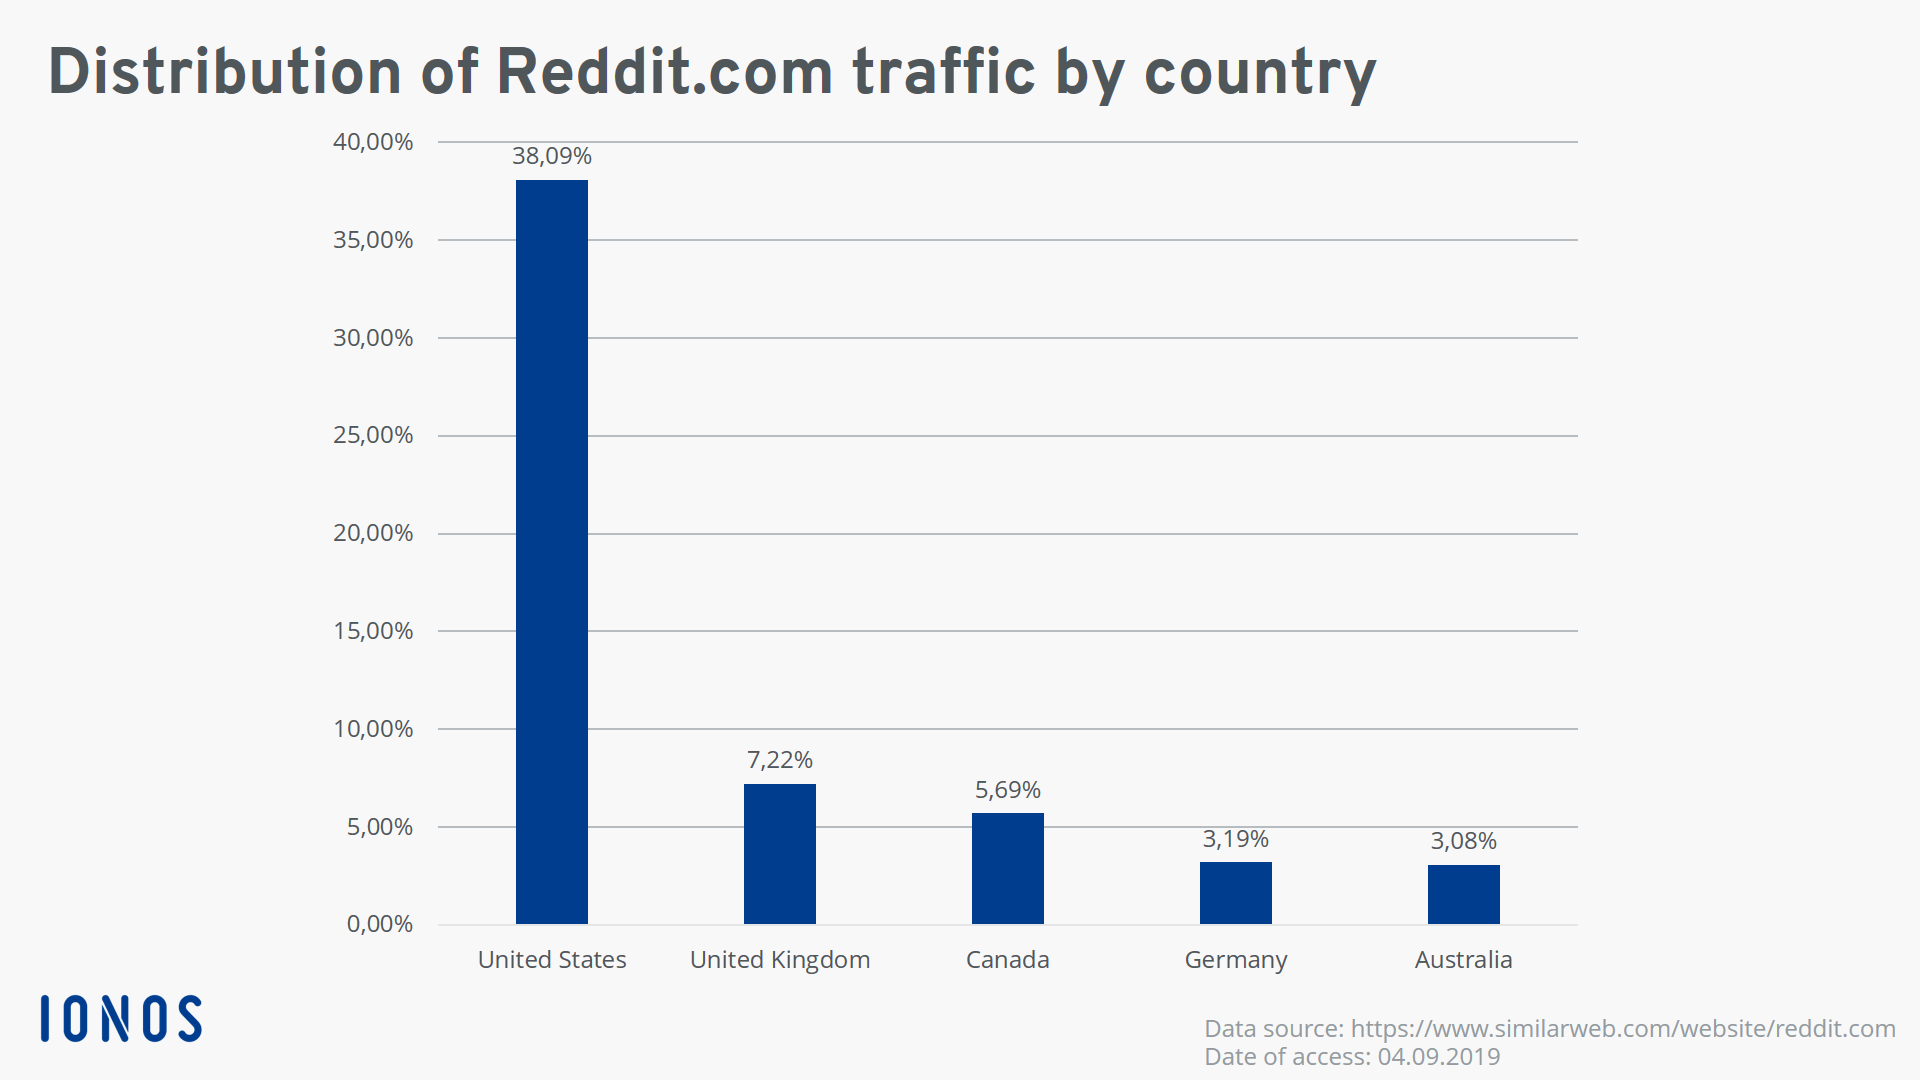 Proporción de tráfico de reddit.com según el país de origen, 2019